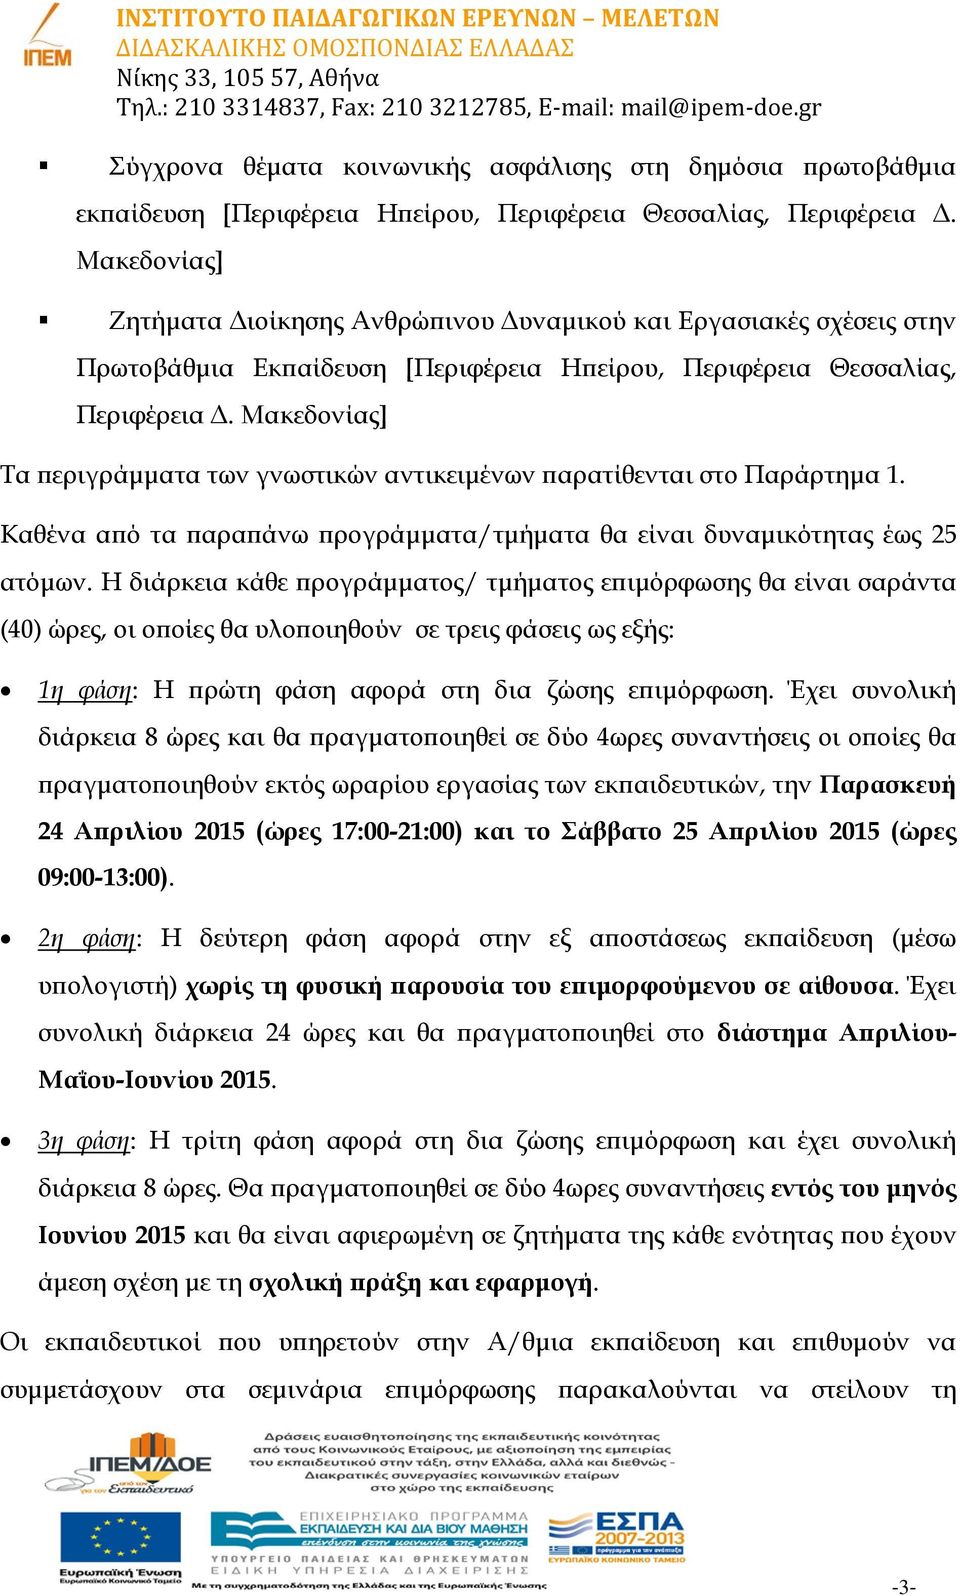 Μακεδονίας] Τα περιγράμματα των γνωστικών αντικειμένων παρατίθενται στο Παράρτημα 1. Καθένα από τα παραπάνω προγράμματα/τμήματα θα είναι δυναμικότητας έως 25 ατόμων.